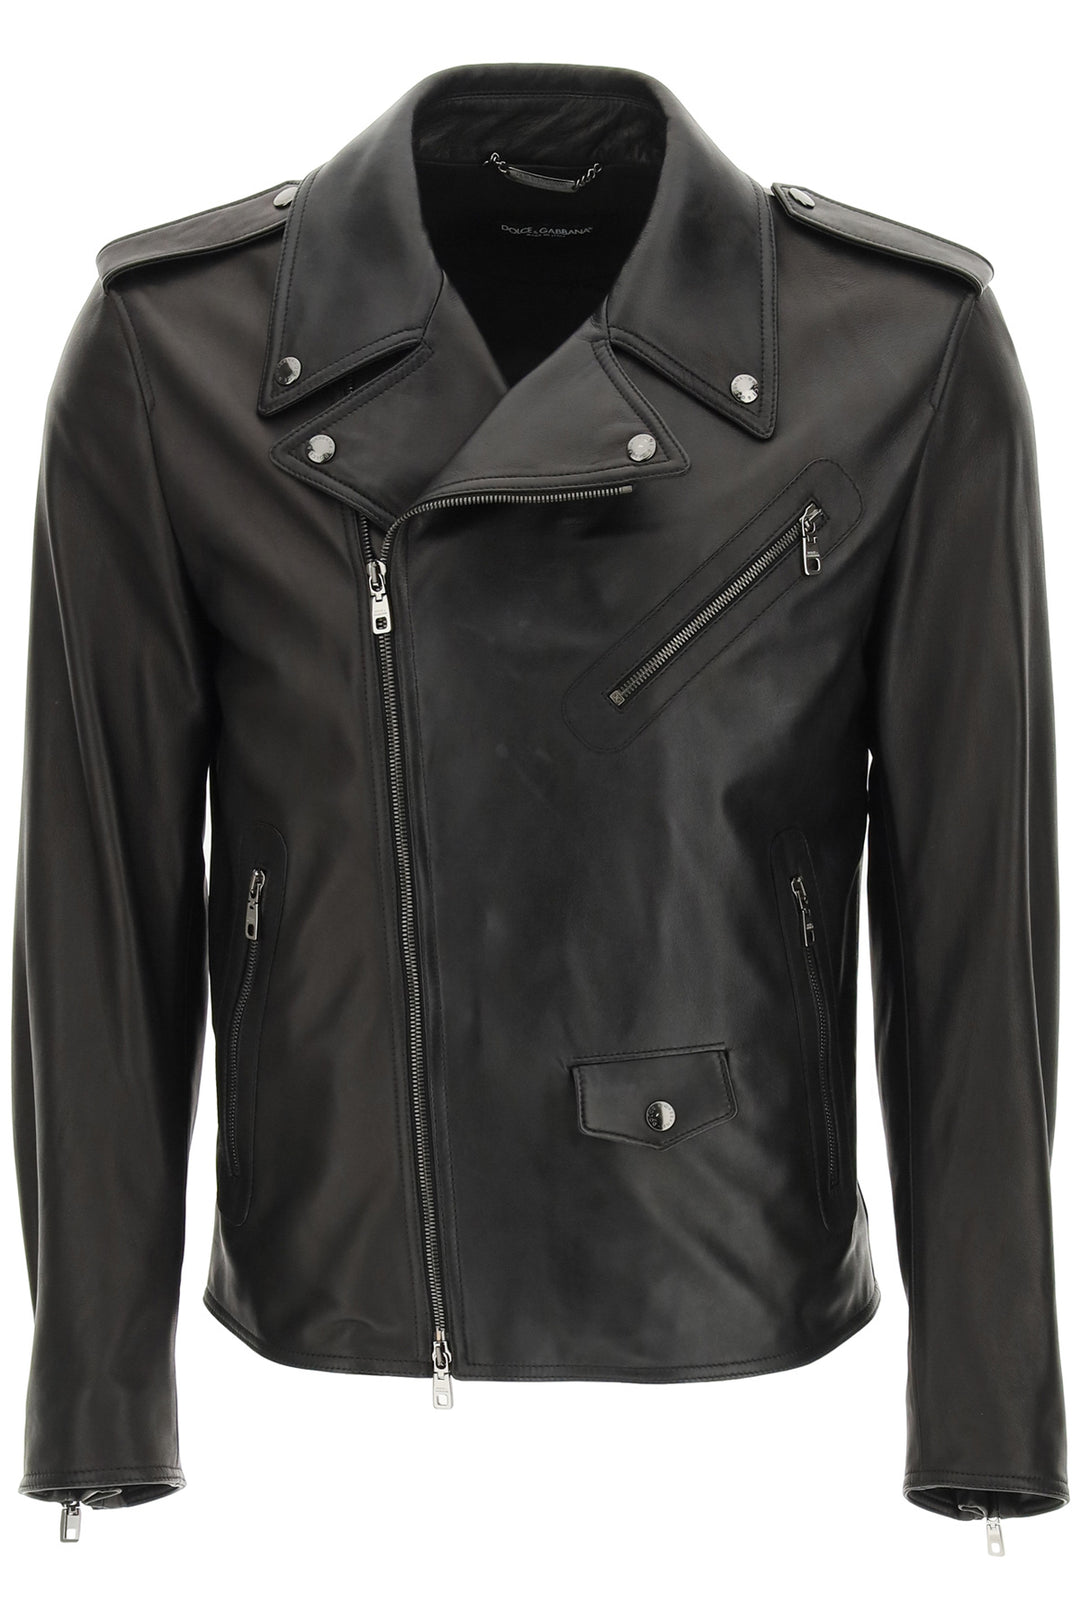 Dolce & Gabbana Leather Jacket   Nero